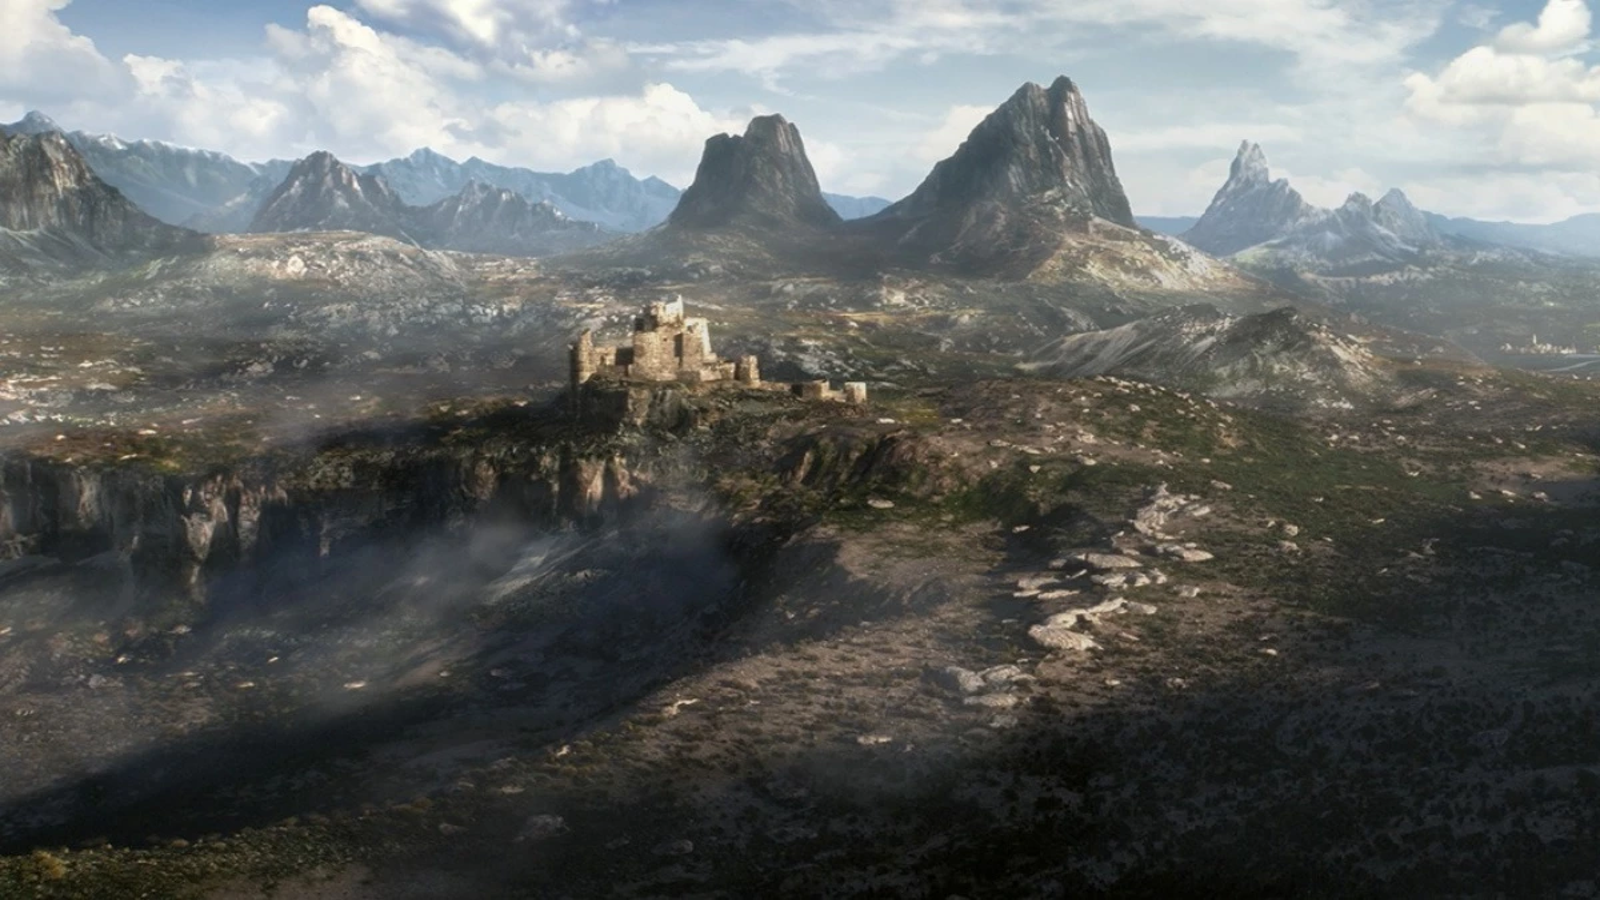 The Elder Scrolls 6 poderá ser exclusivo Xbox e PC